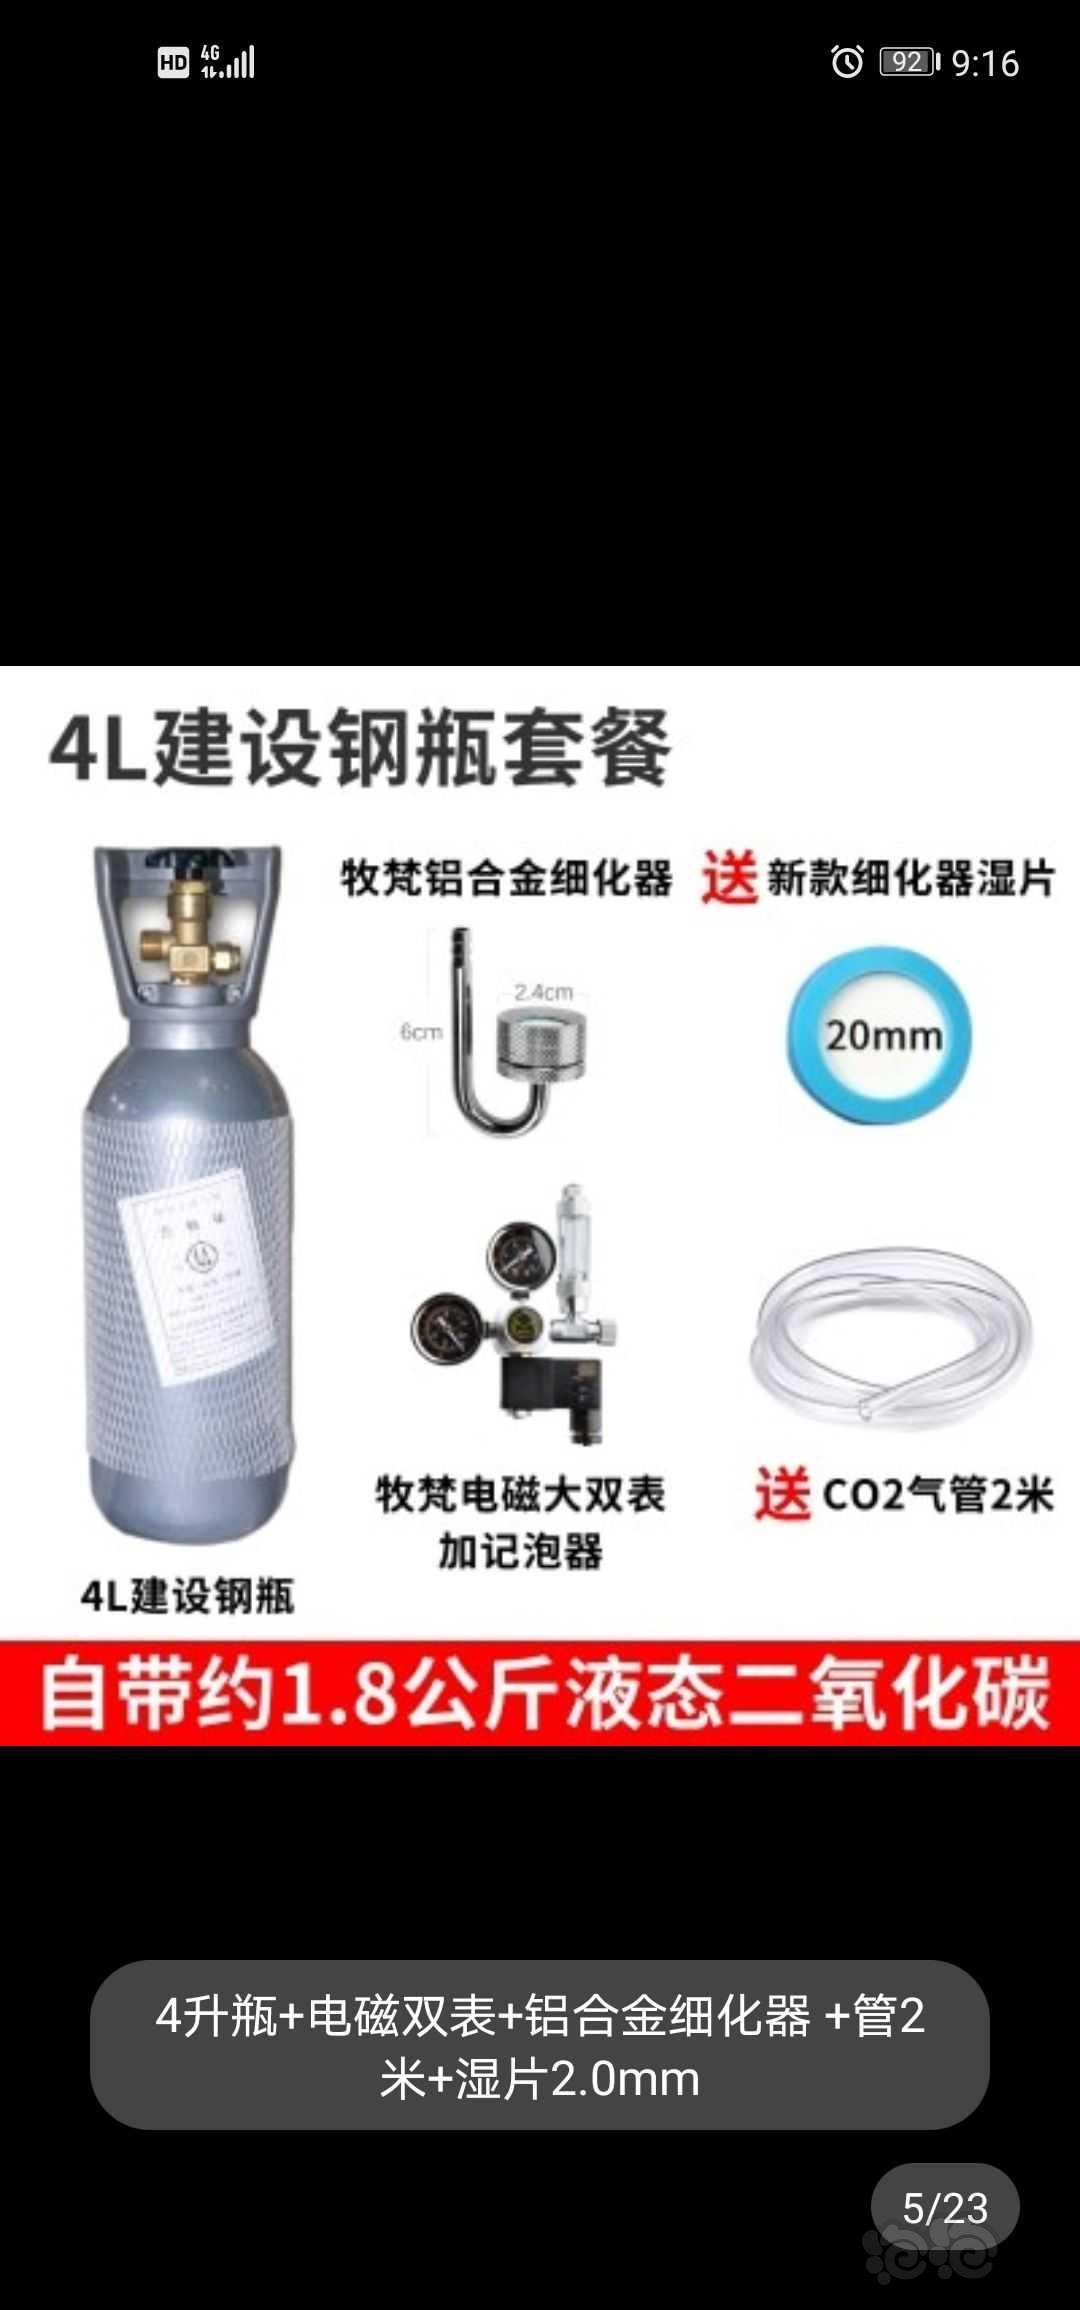 【求购】北京地区求购一套4l钢瓶全套的-图1